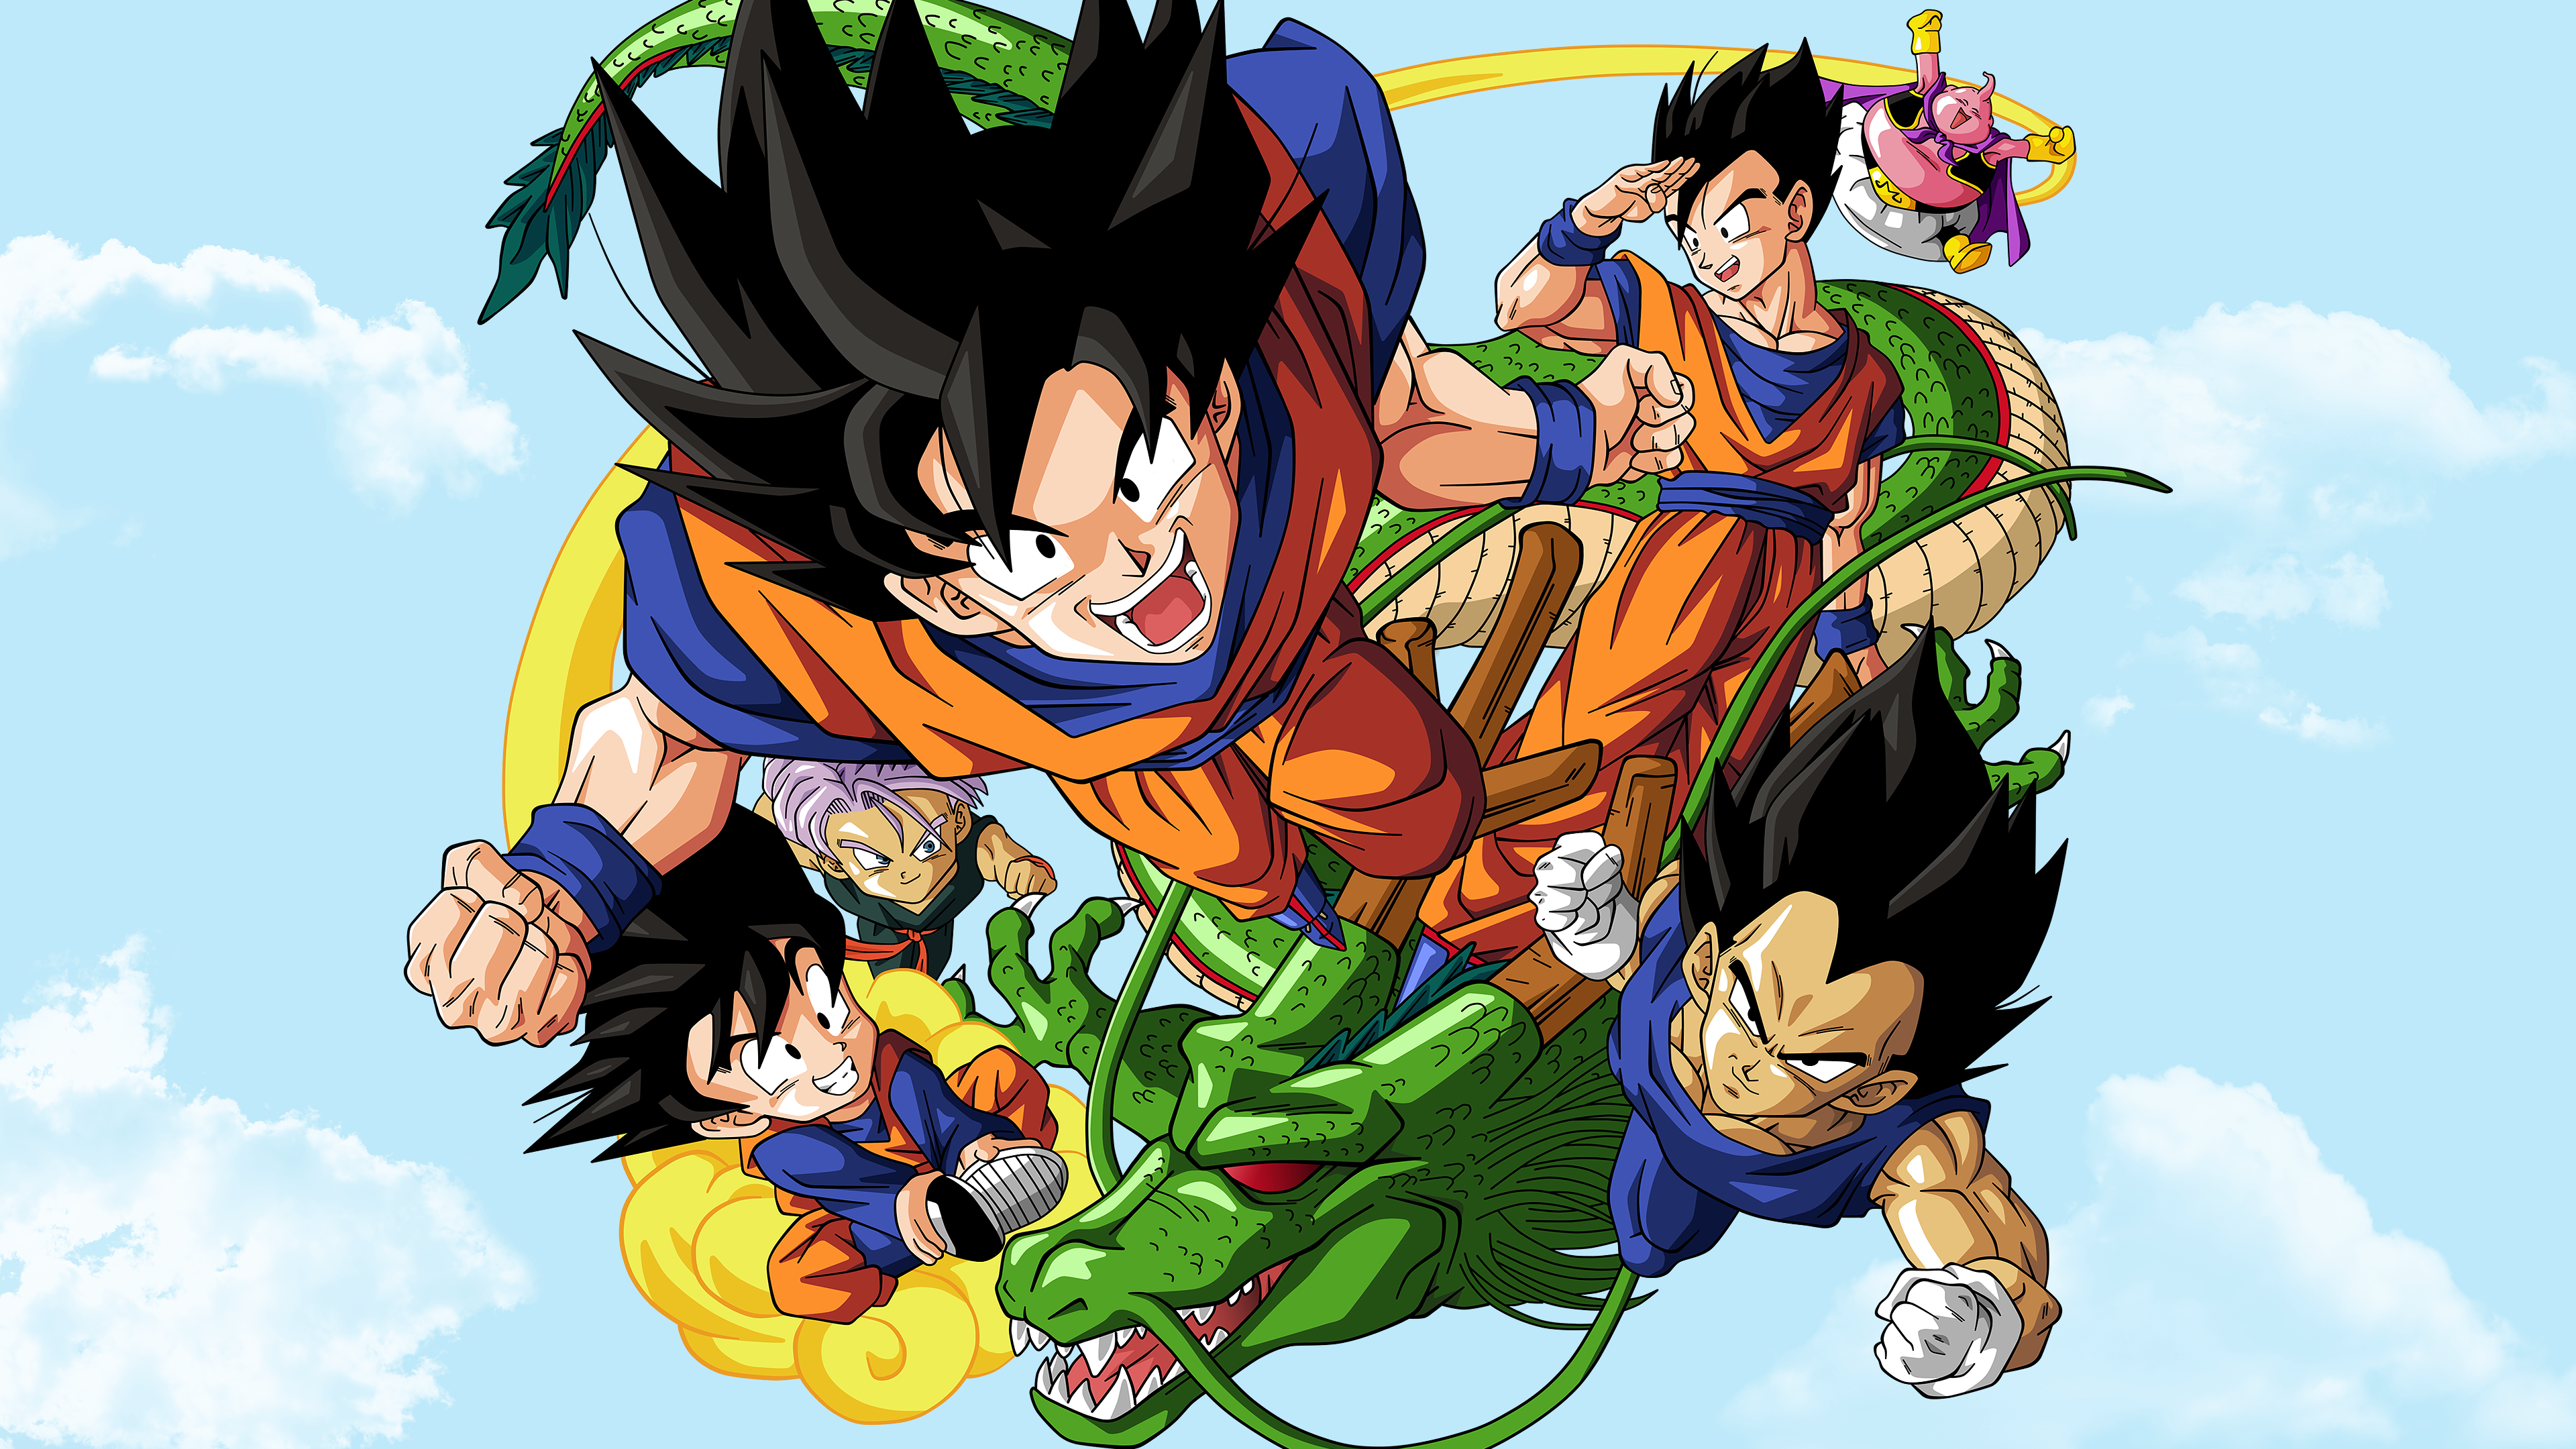 Dragon Ball Super: anunciado novo arco do mangá – ANMTV